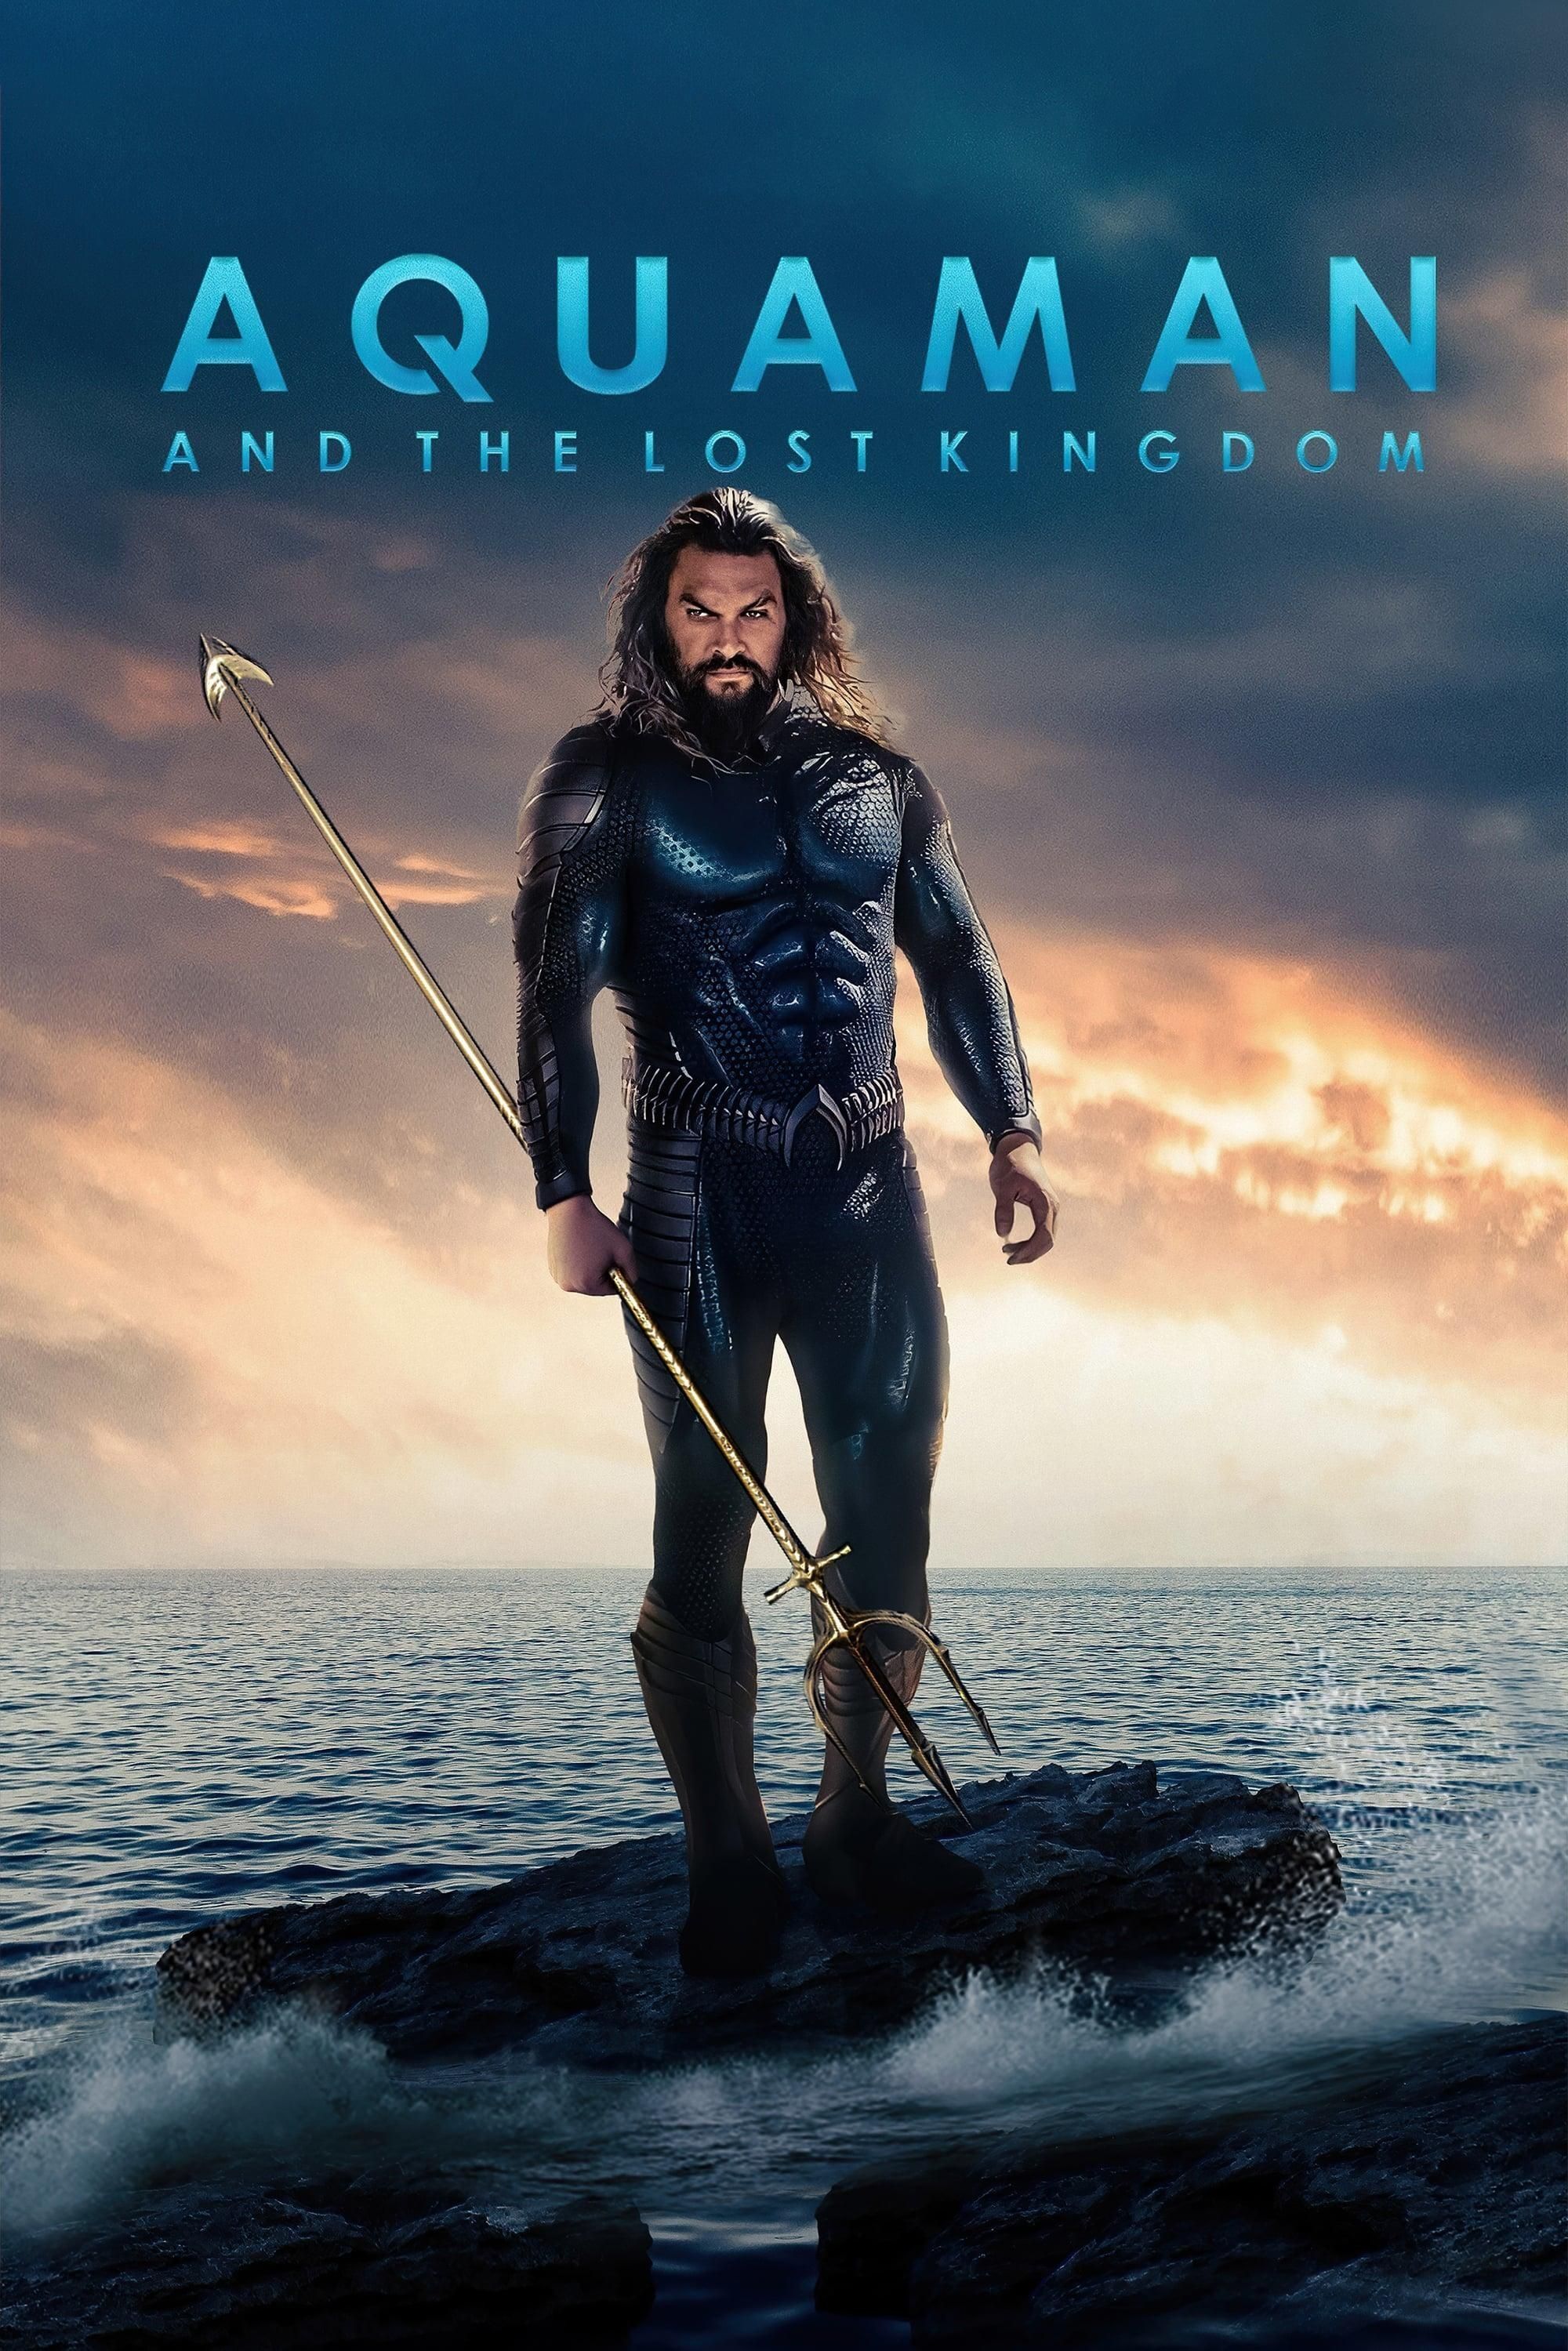 Aquaman 2' Poster — Jason Momoa Teams Up With Patrick Wilson